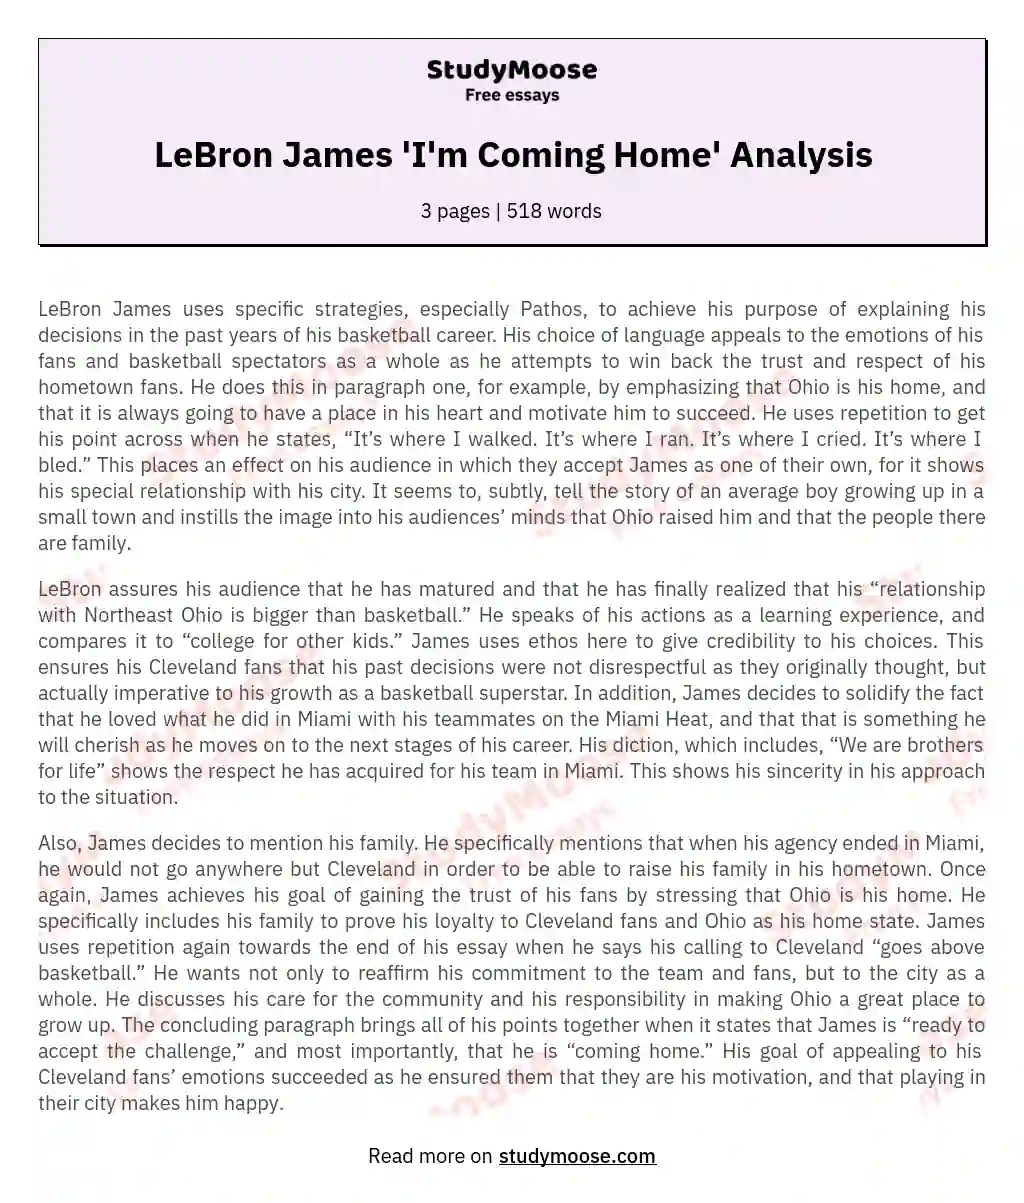 LeBron James 'I'm Coming Home' Analysis